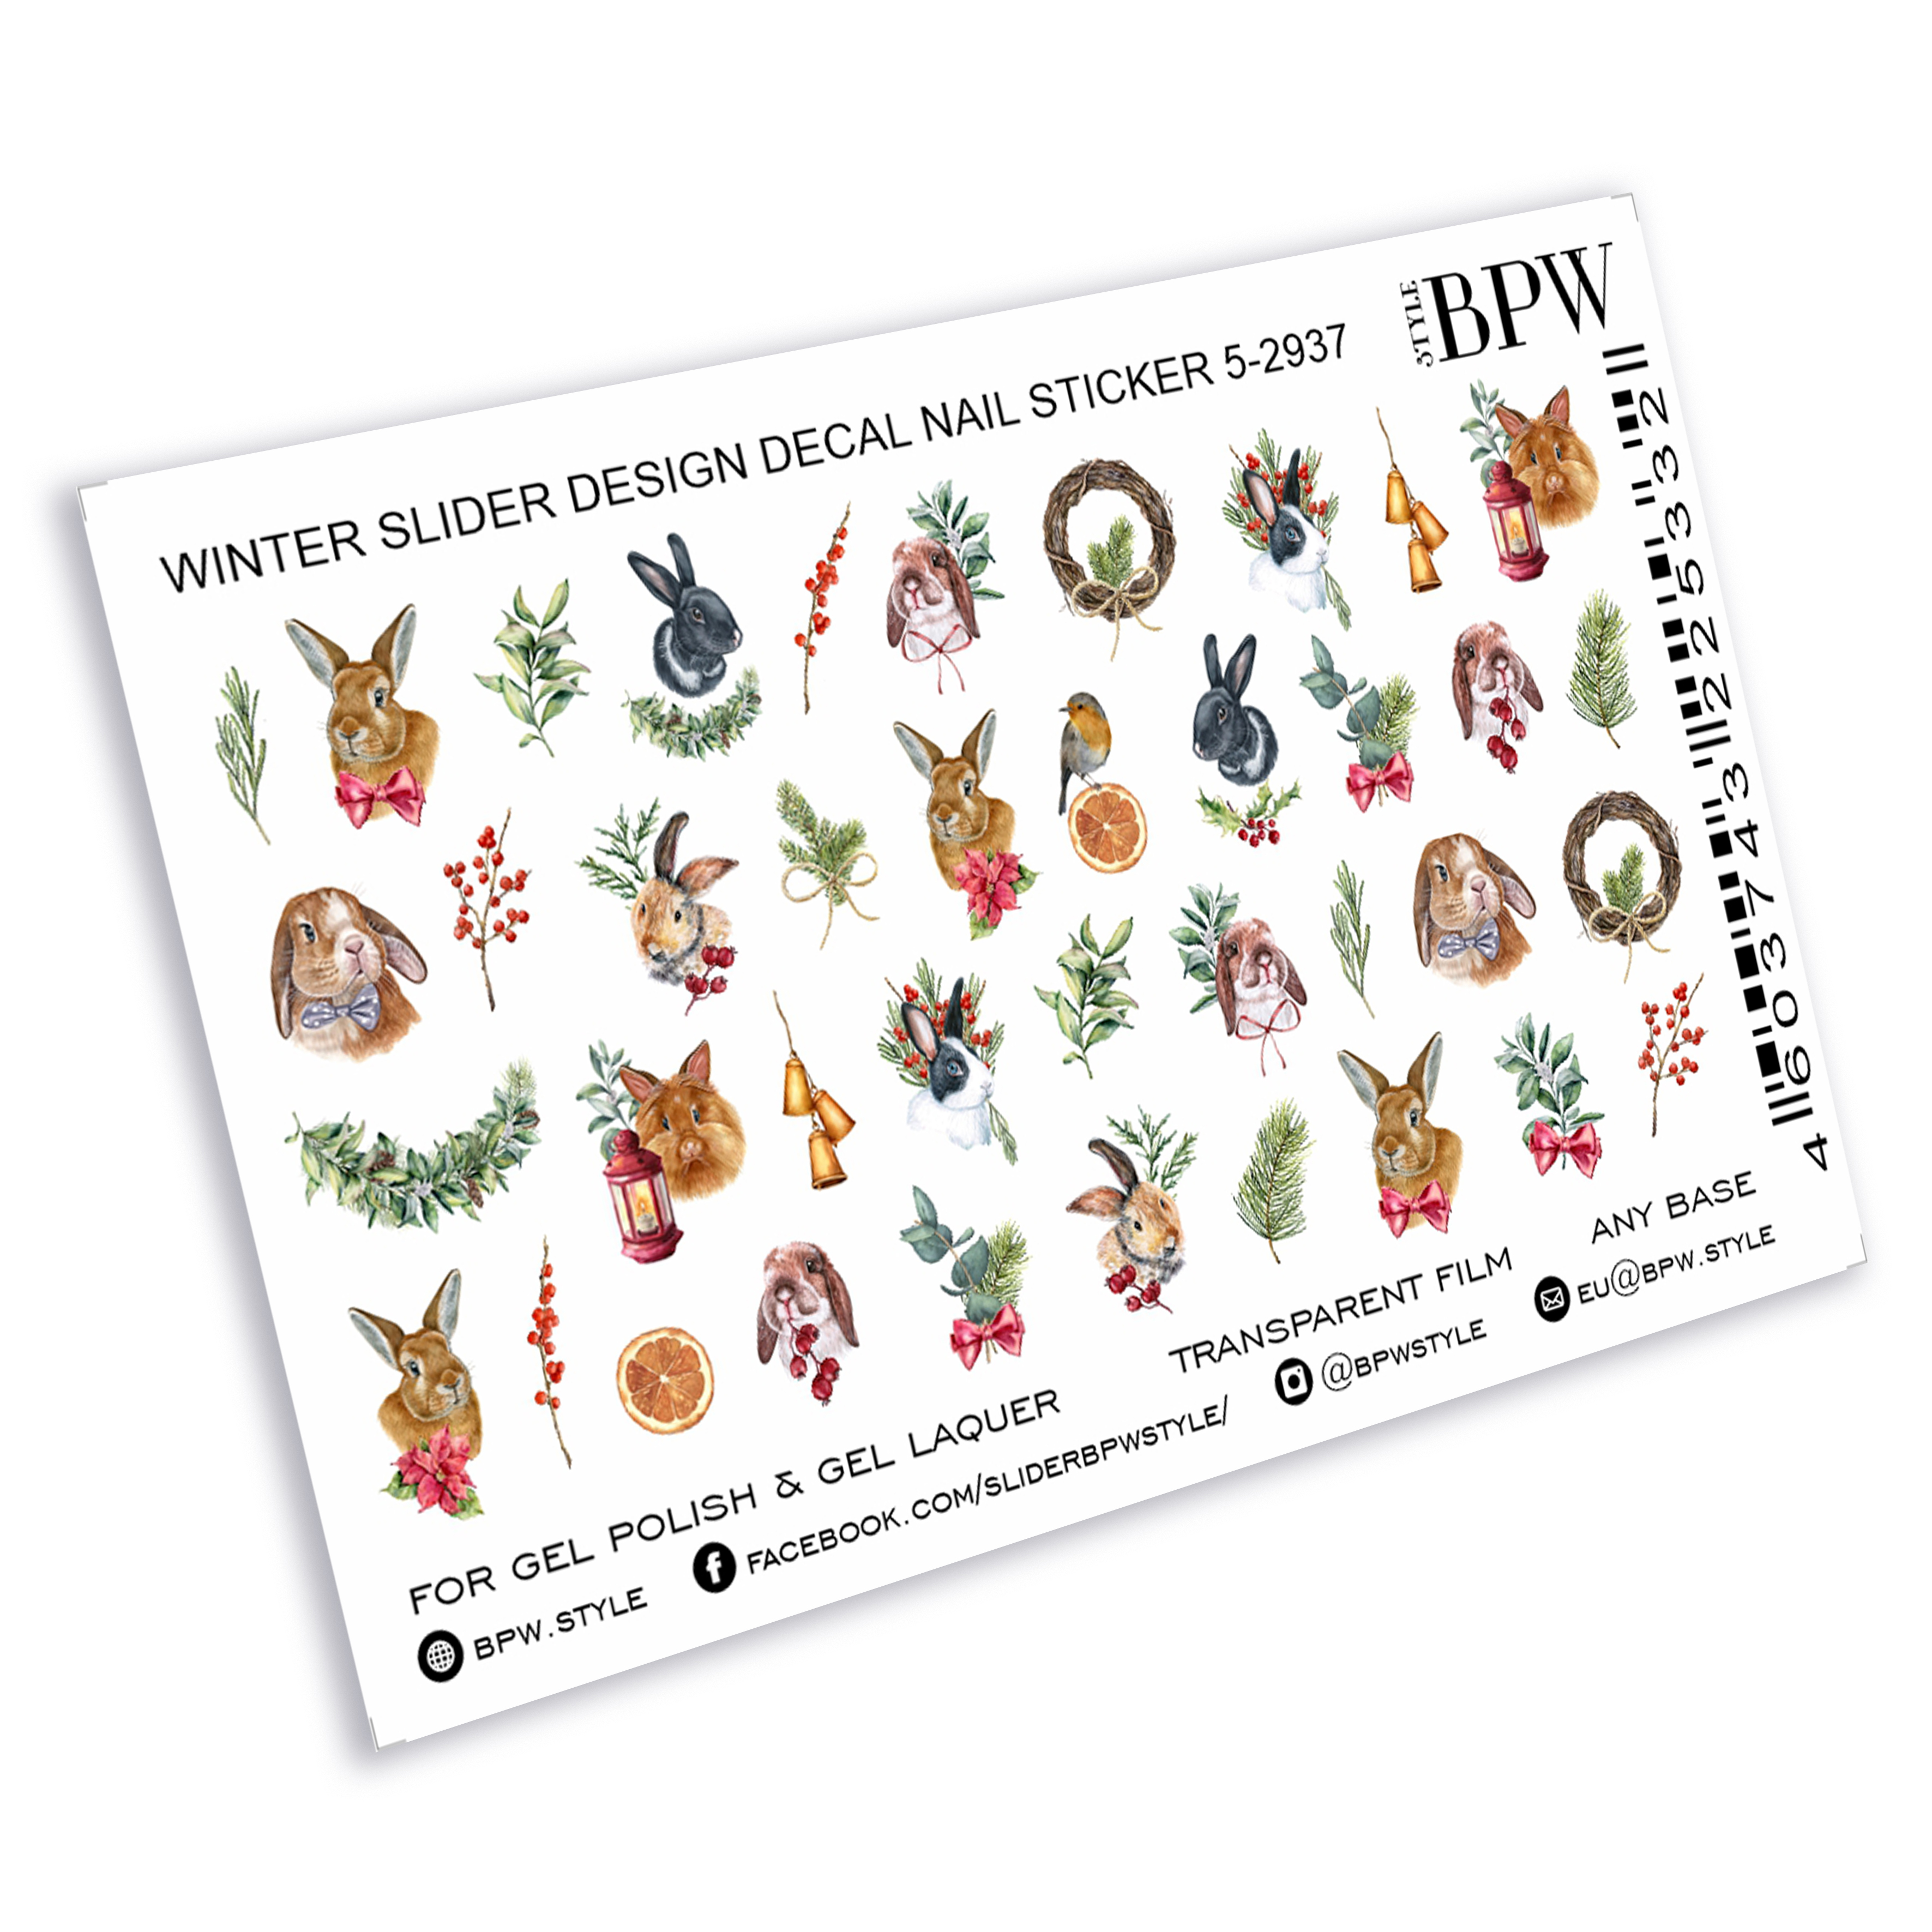 Слайдер-дизайн Рождество с кроликами из каталога Цветные на любой фон в интернет-магазине BPW.style